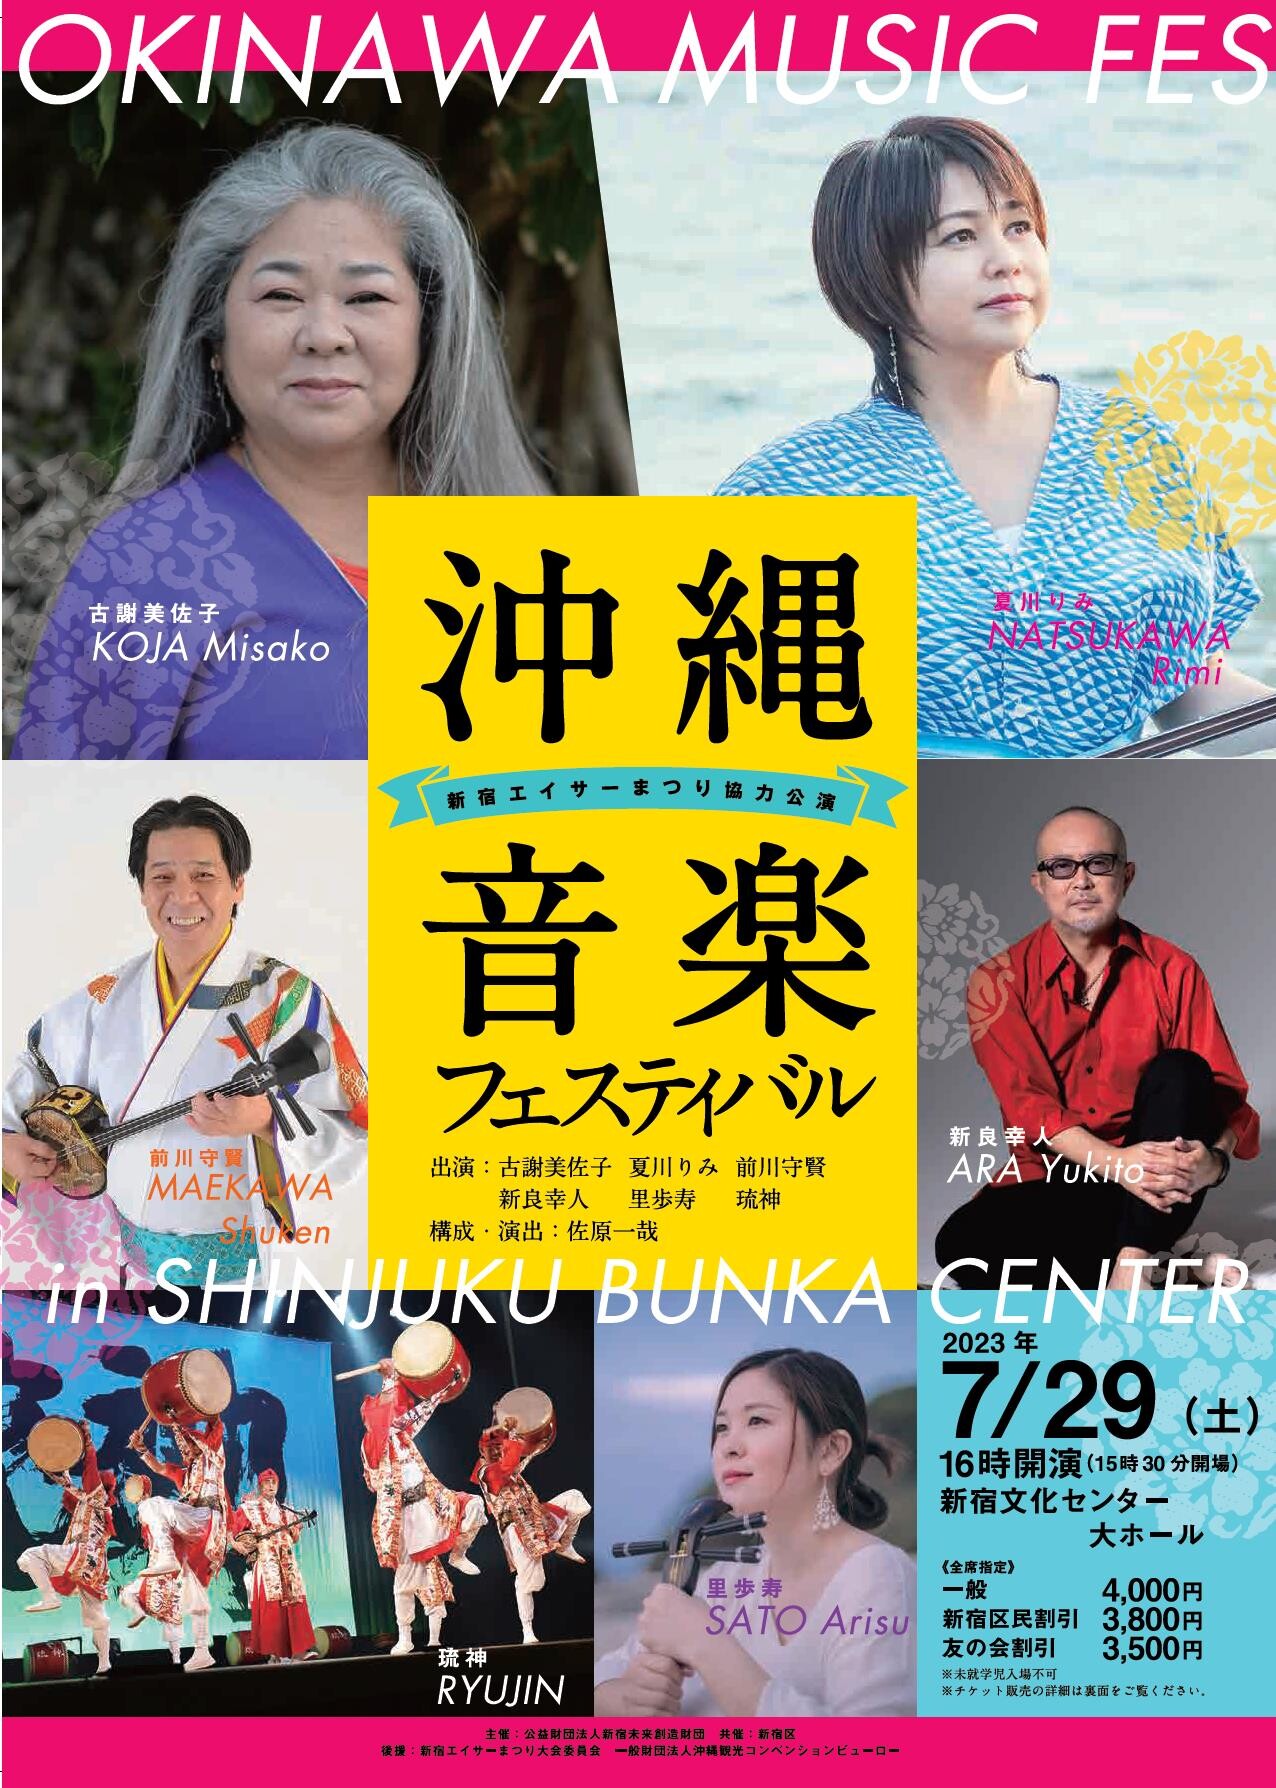 新宿で、茅ヶ崎で、沖縄を満喫「沖縄音楽フェスティバル」